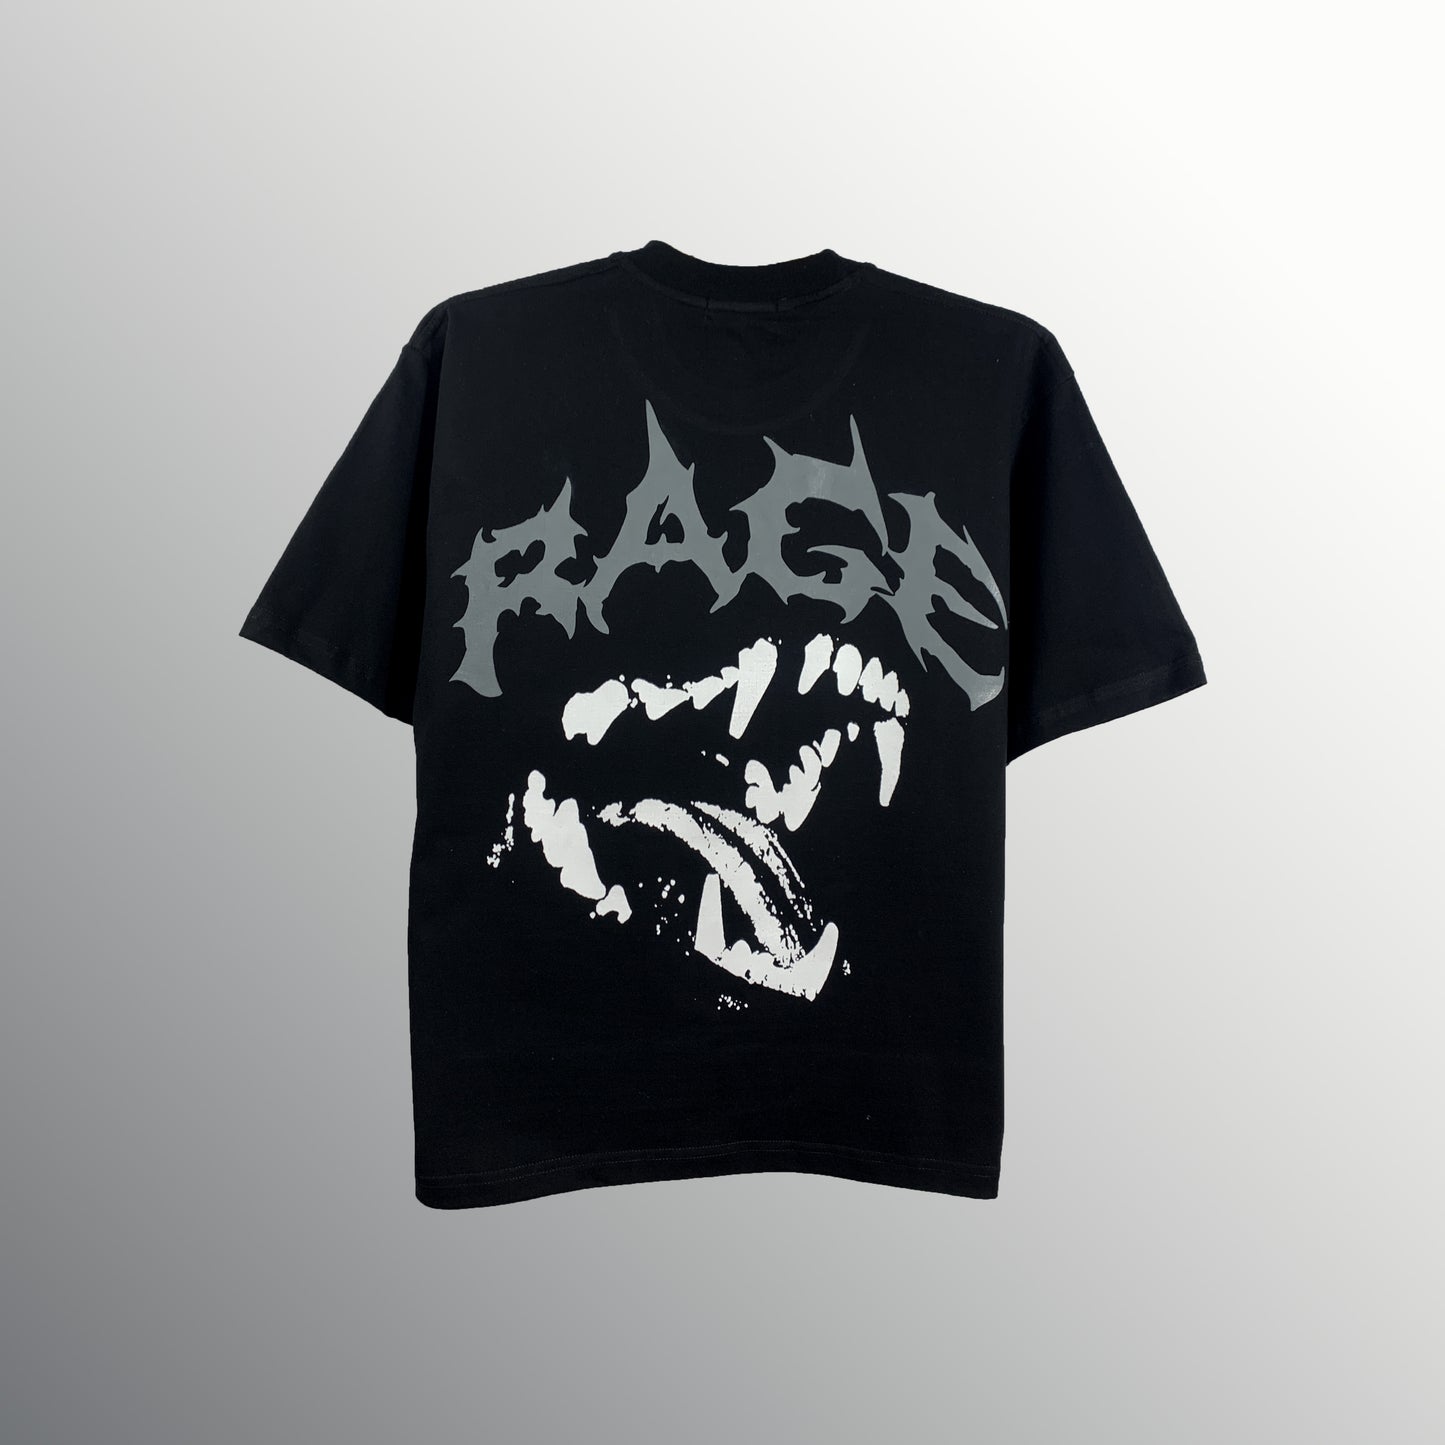 Rage x Black - Tshirt